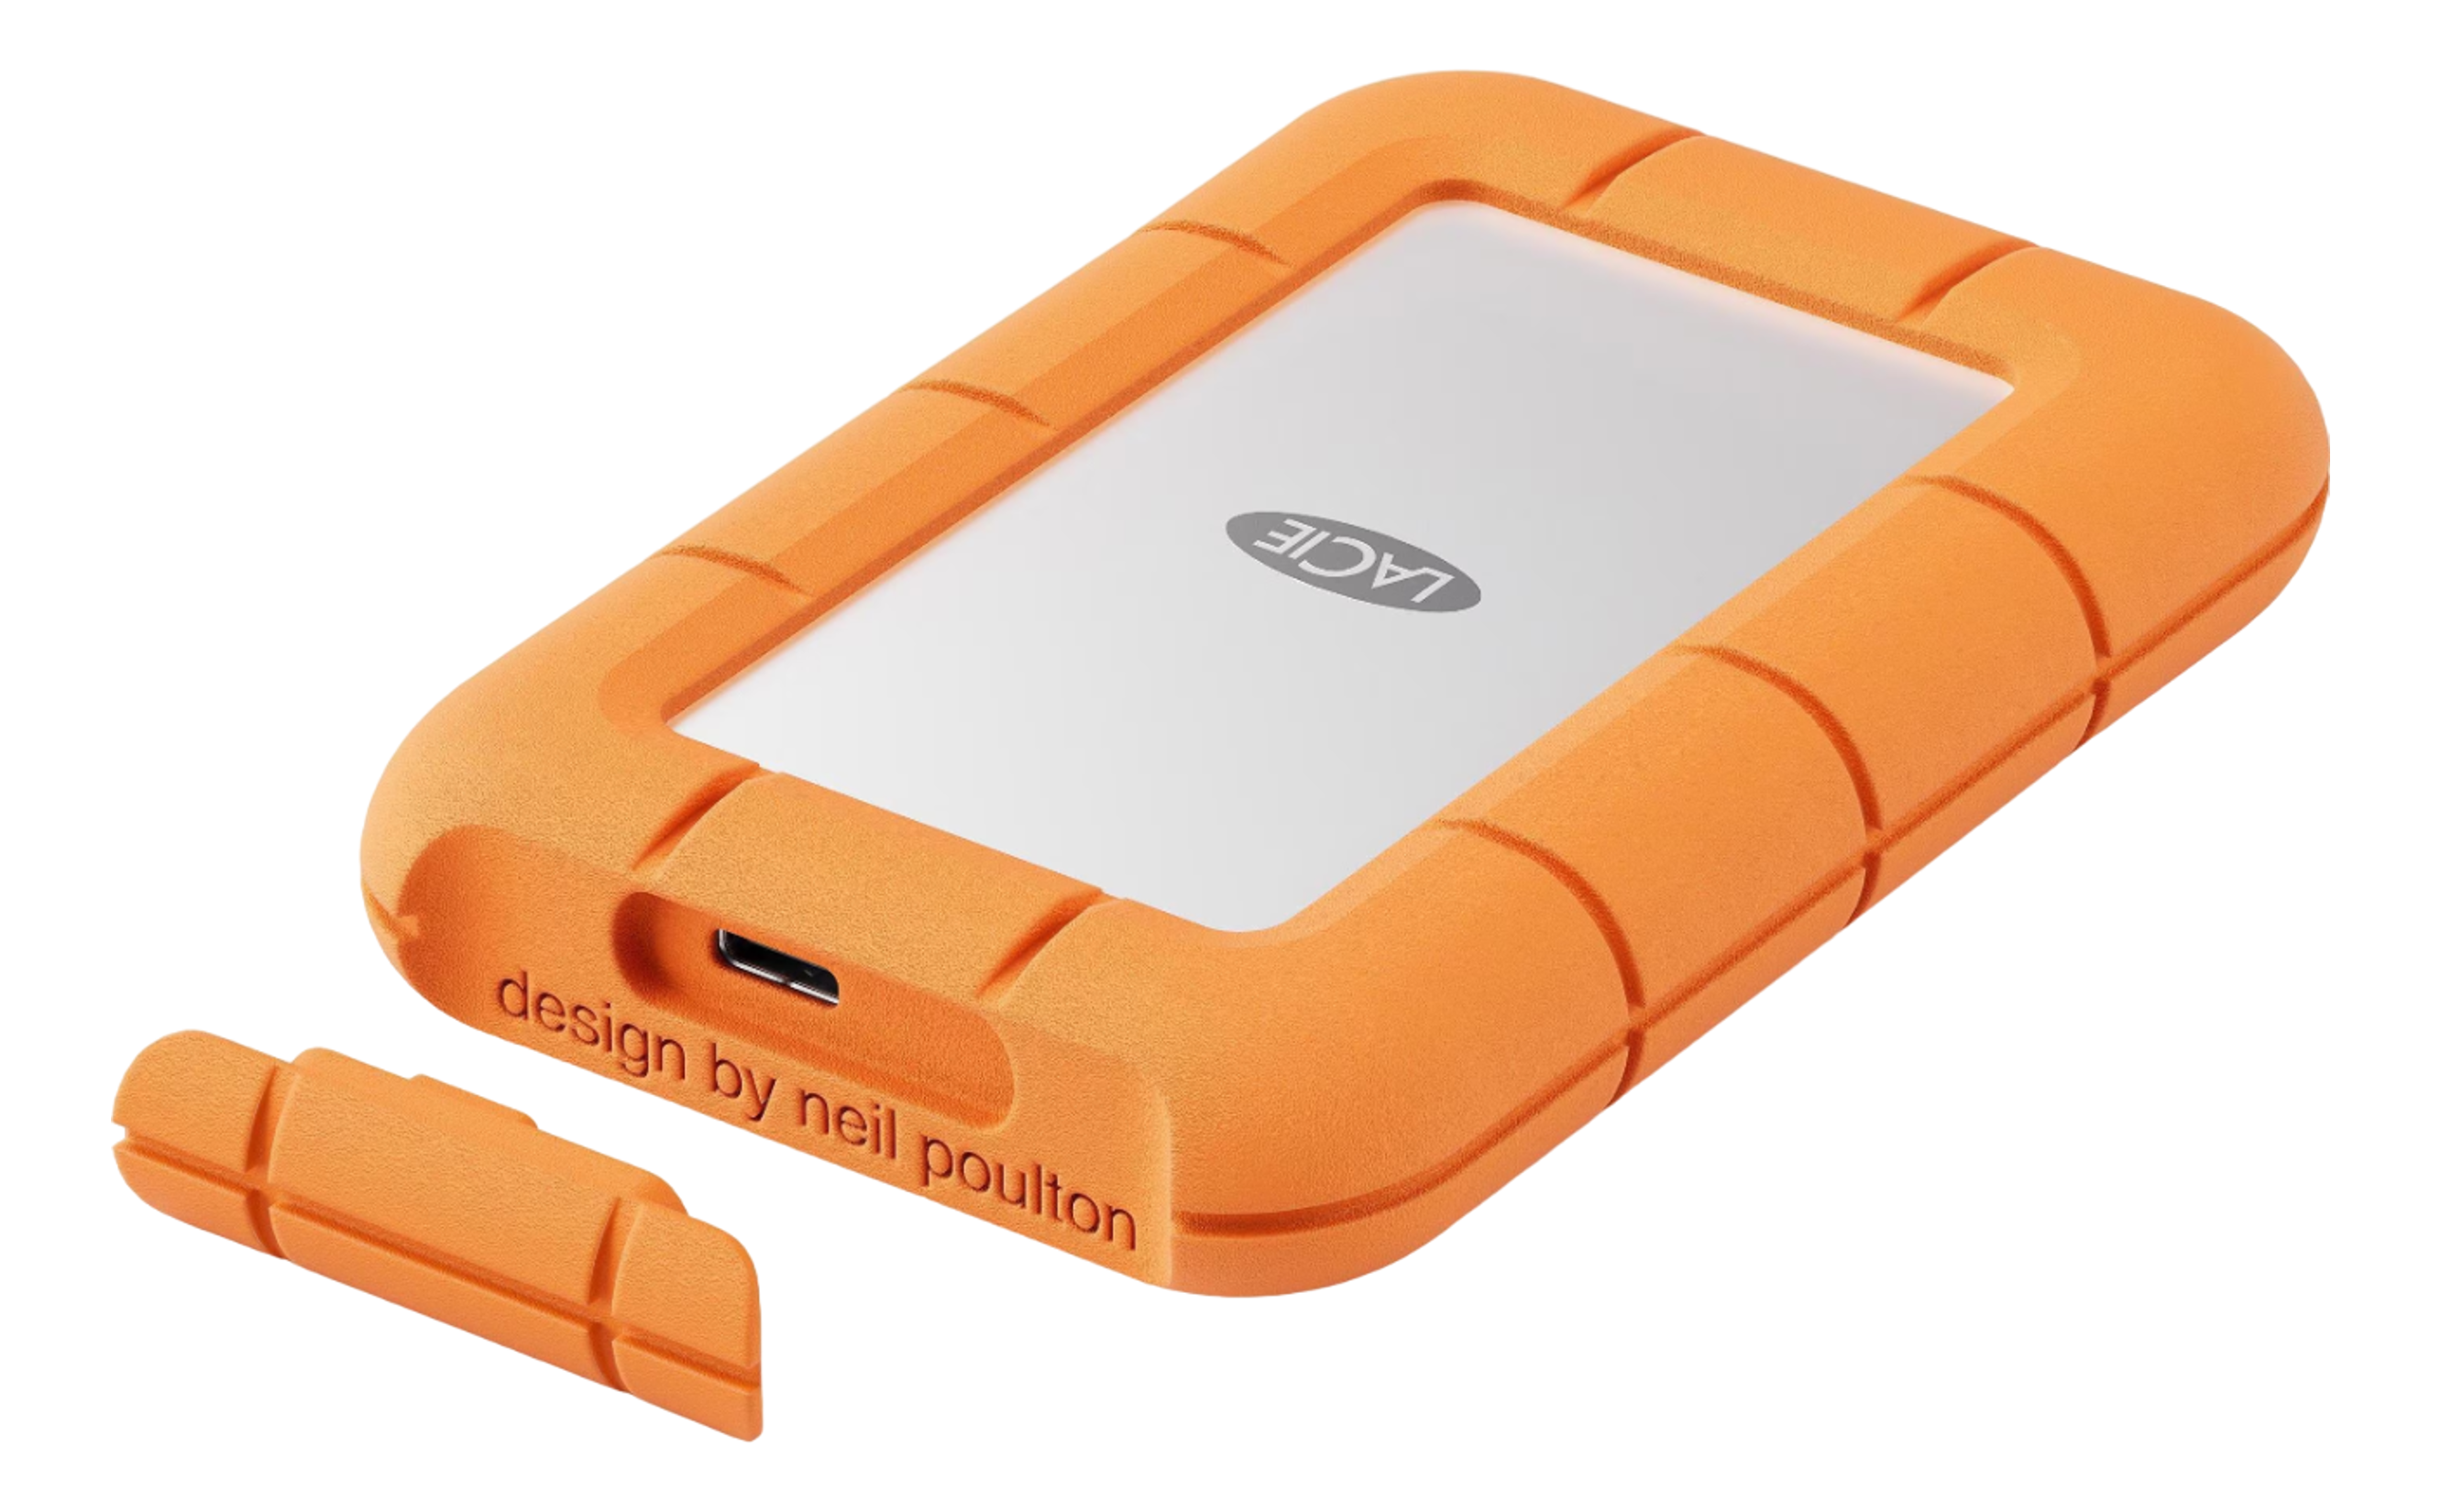 LACIE Rugged Mini - Disco fisso (SSD, 500 GB, Arancione/Argento)